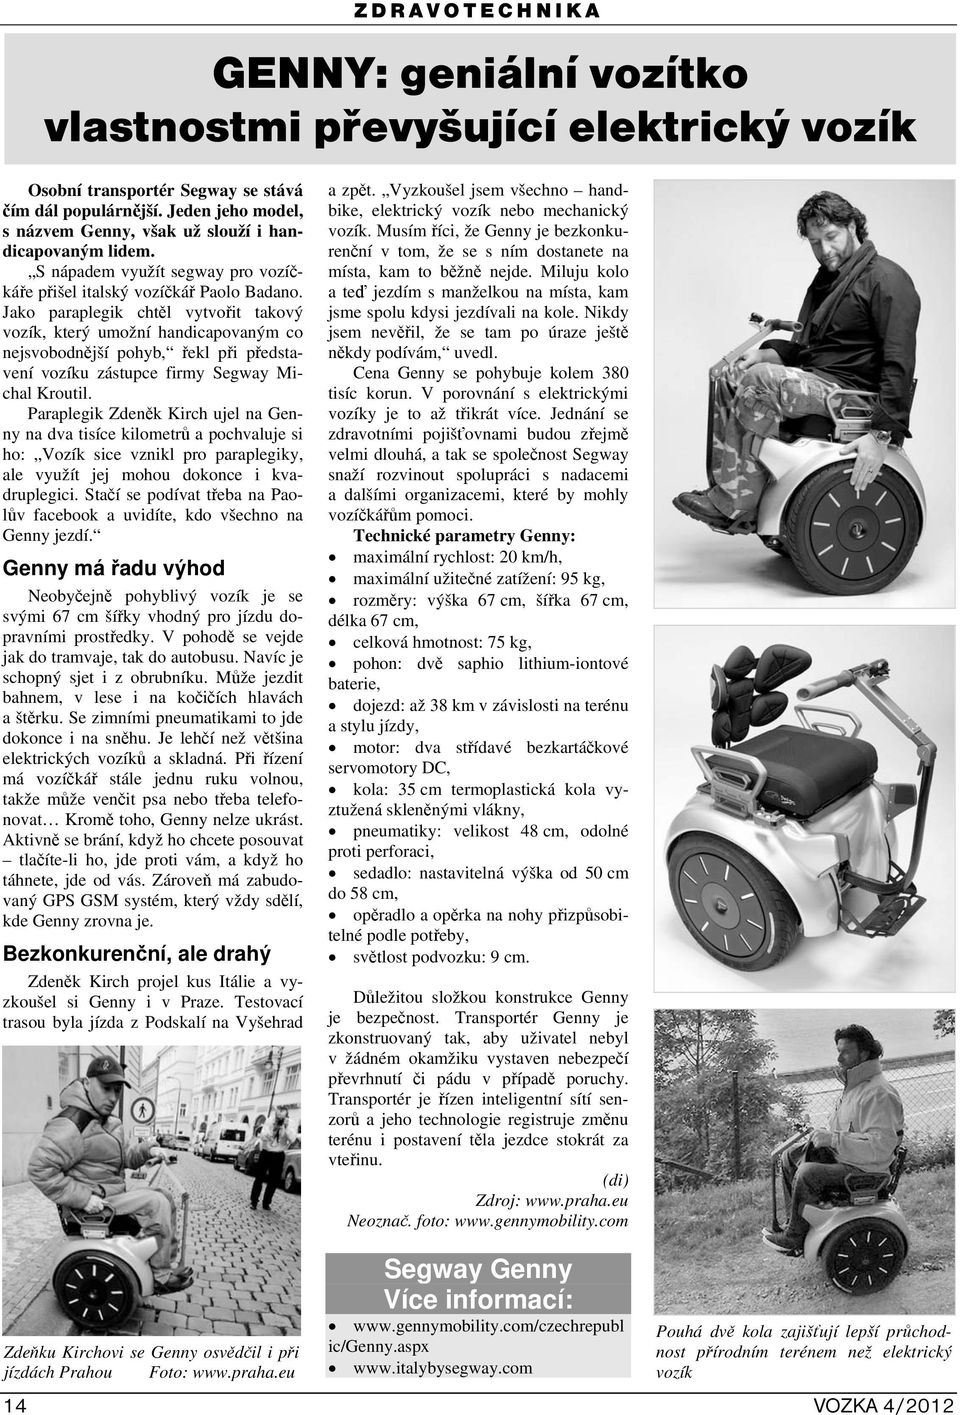 Jako paraplegik chtěl vytvořit takový vozík, který umožní handicapovaným co nejsvobodnější pohyb, řekl při představení vozíku zástupce firmy Segway Michal Kroutil.